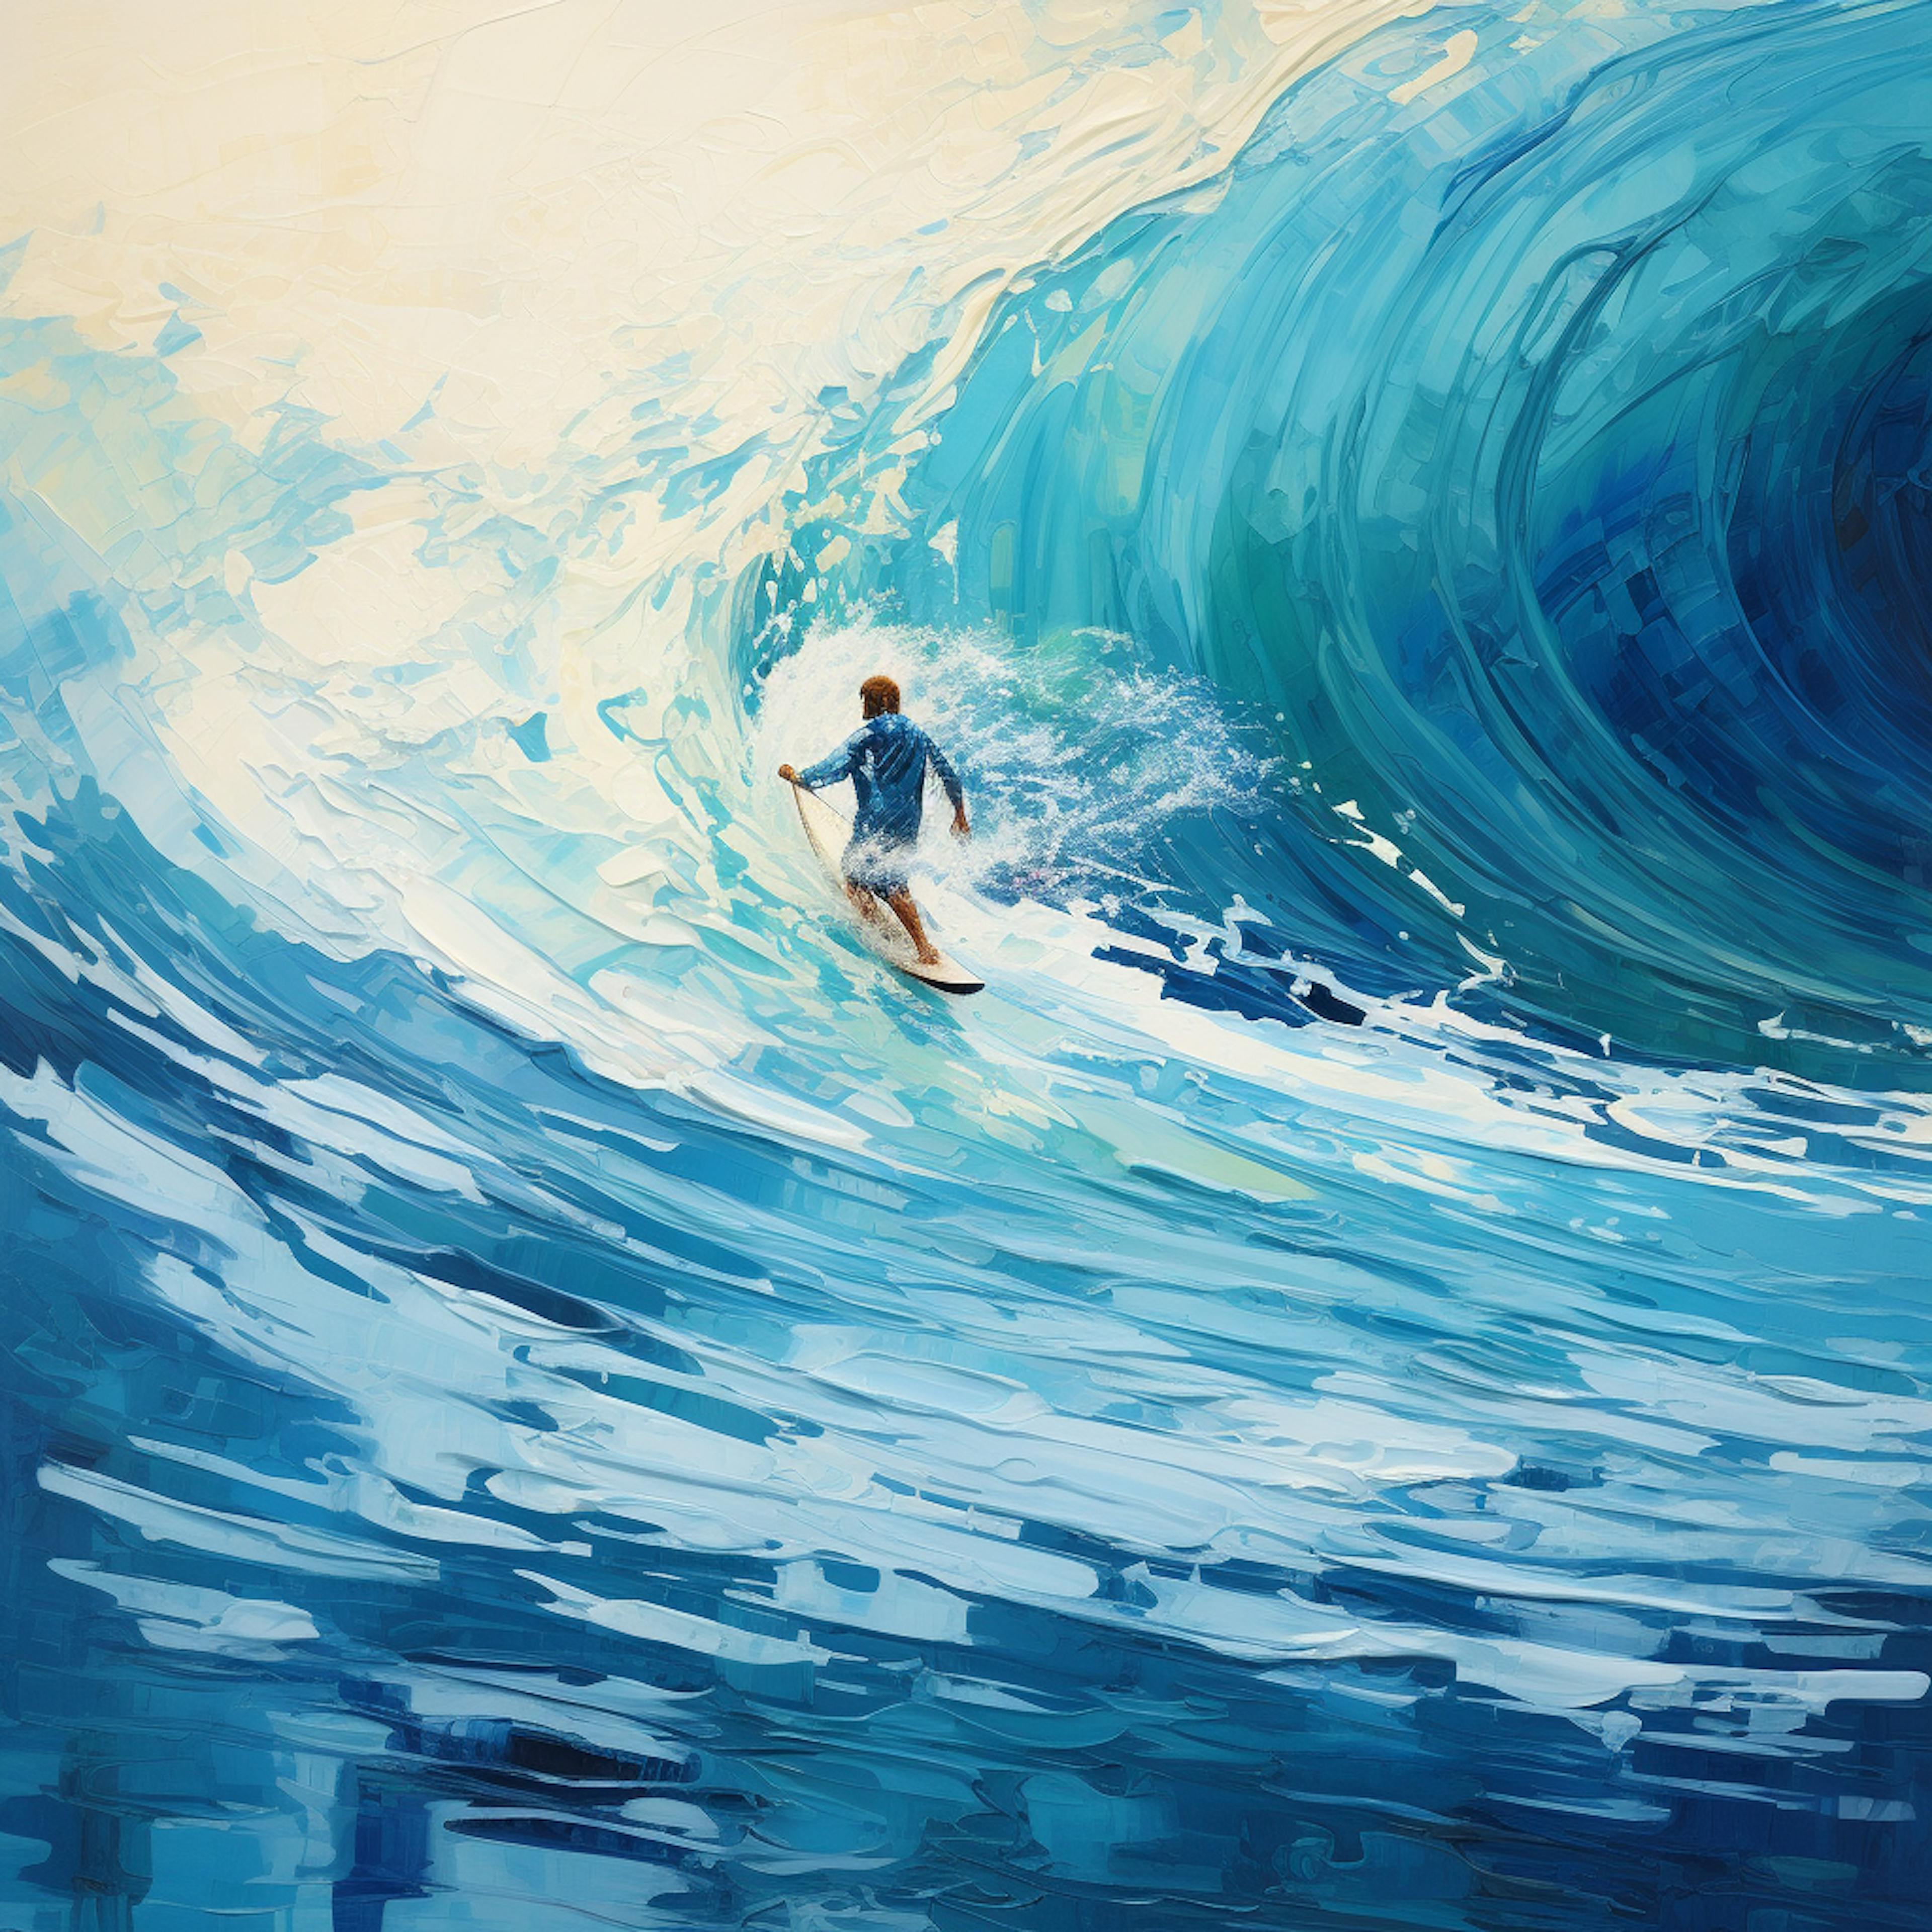 A surfer surfing